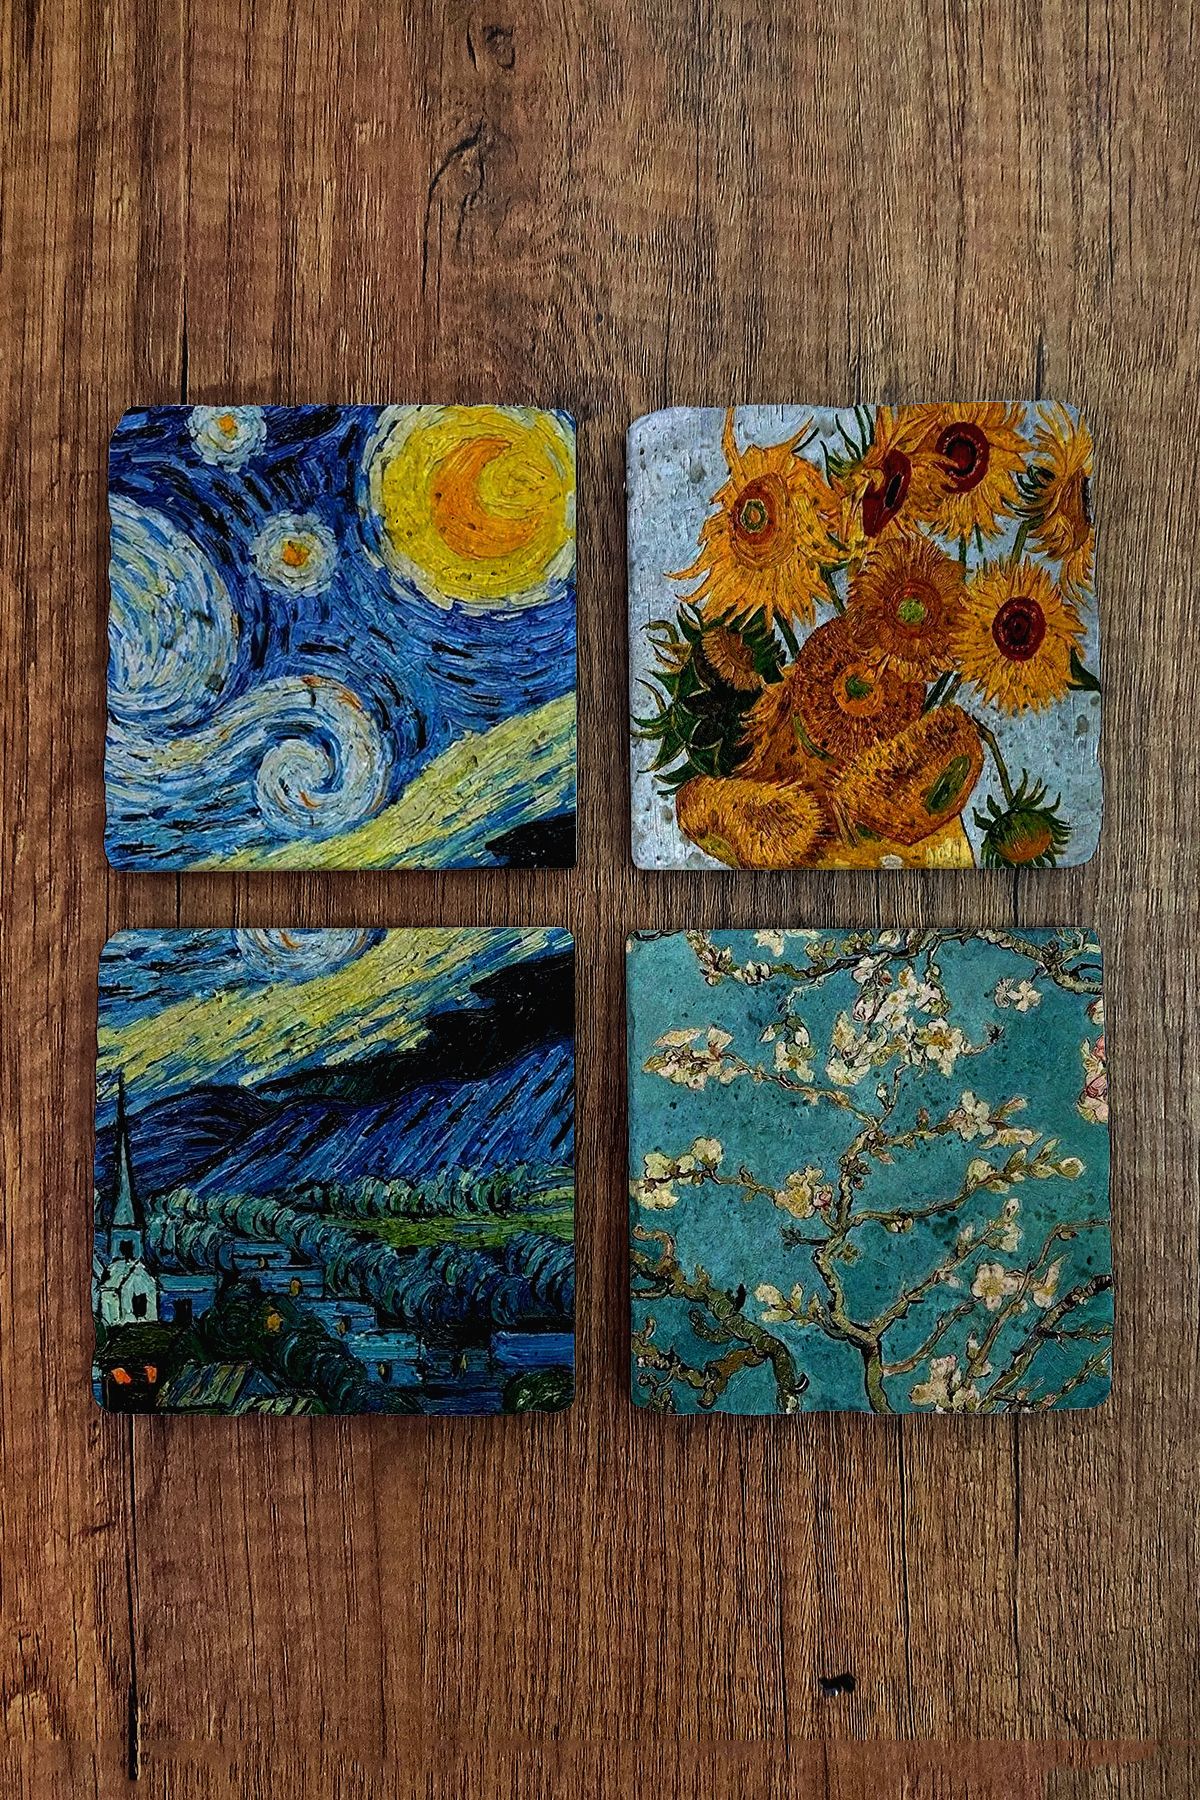 Begoloni Stone Decor Doğal Taş Bardak Altlığı 4'lü Set - Vincent Van Gogh Eserleri - Stone Coasters